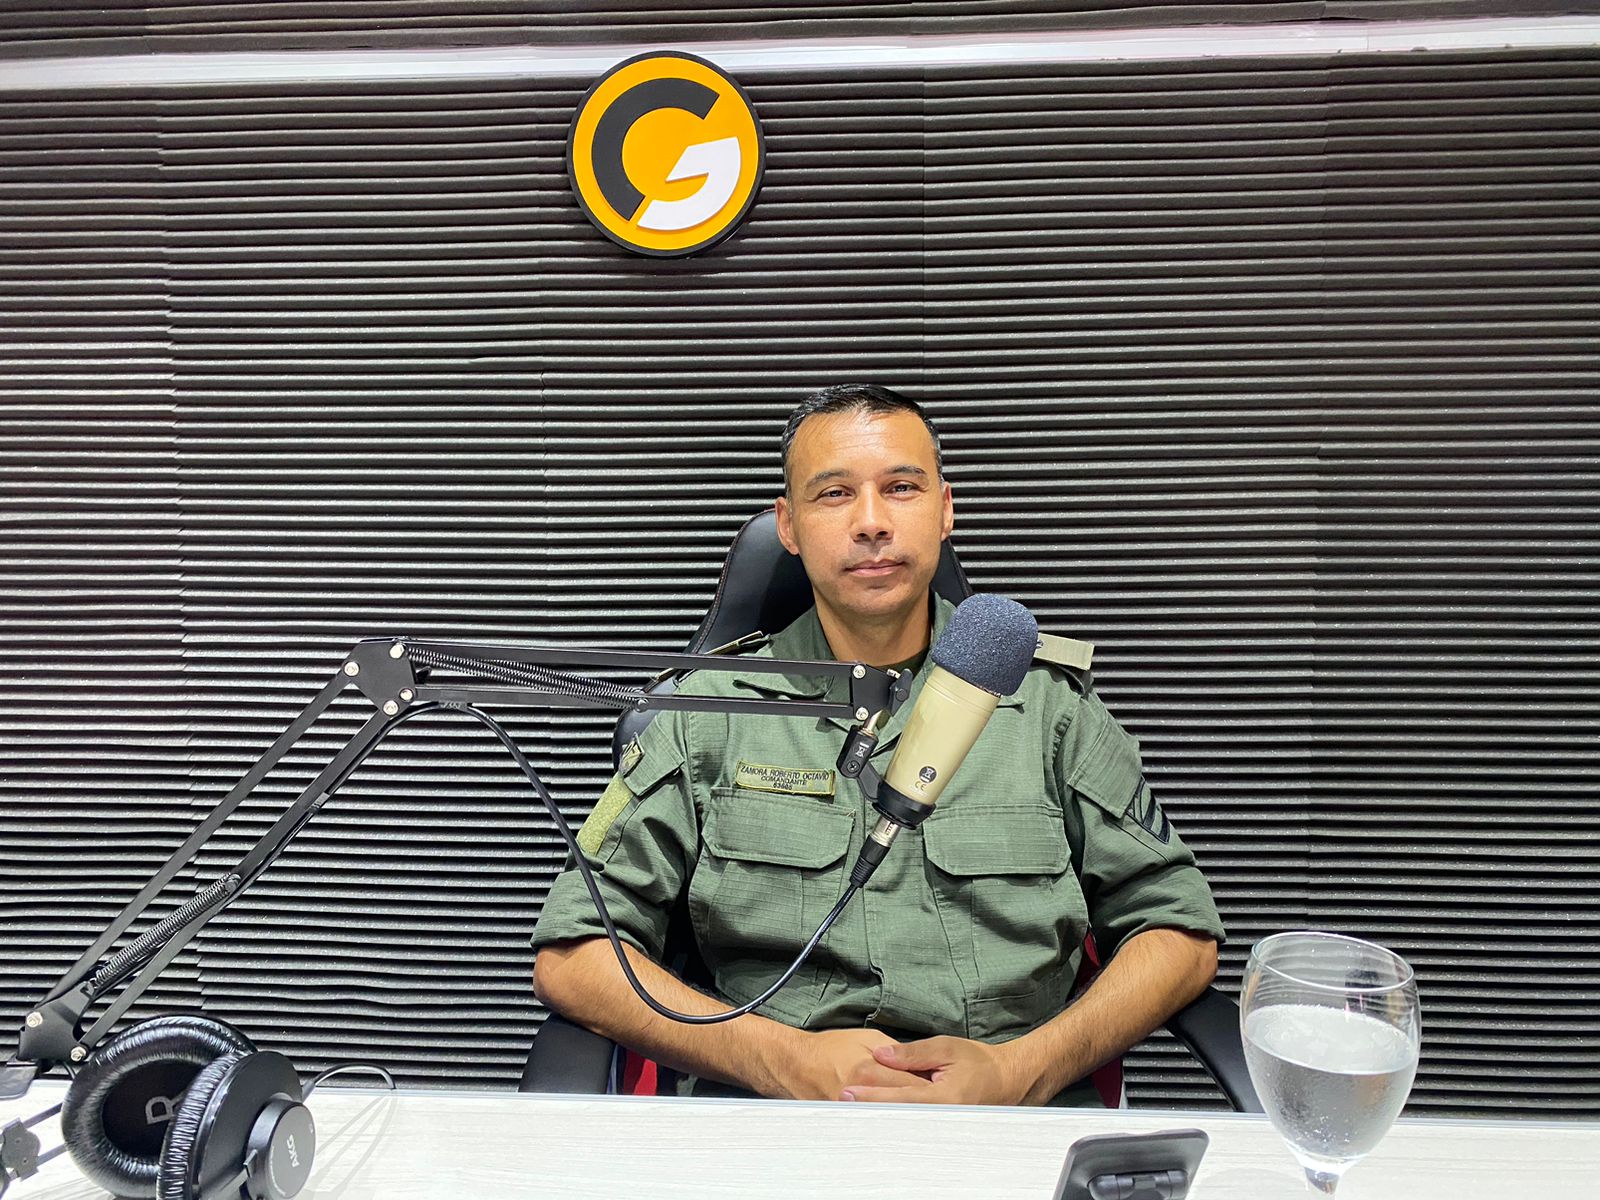 El Comandantes Roberto Octavio Zamora "Estoy realmente encantado dado que la gente es muy empática"